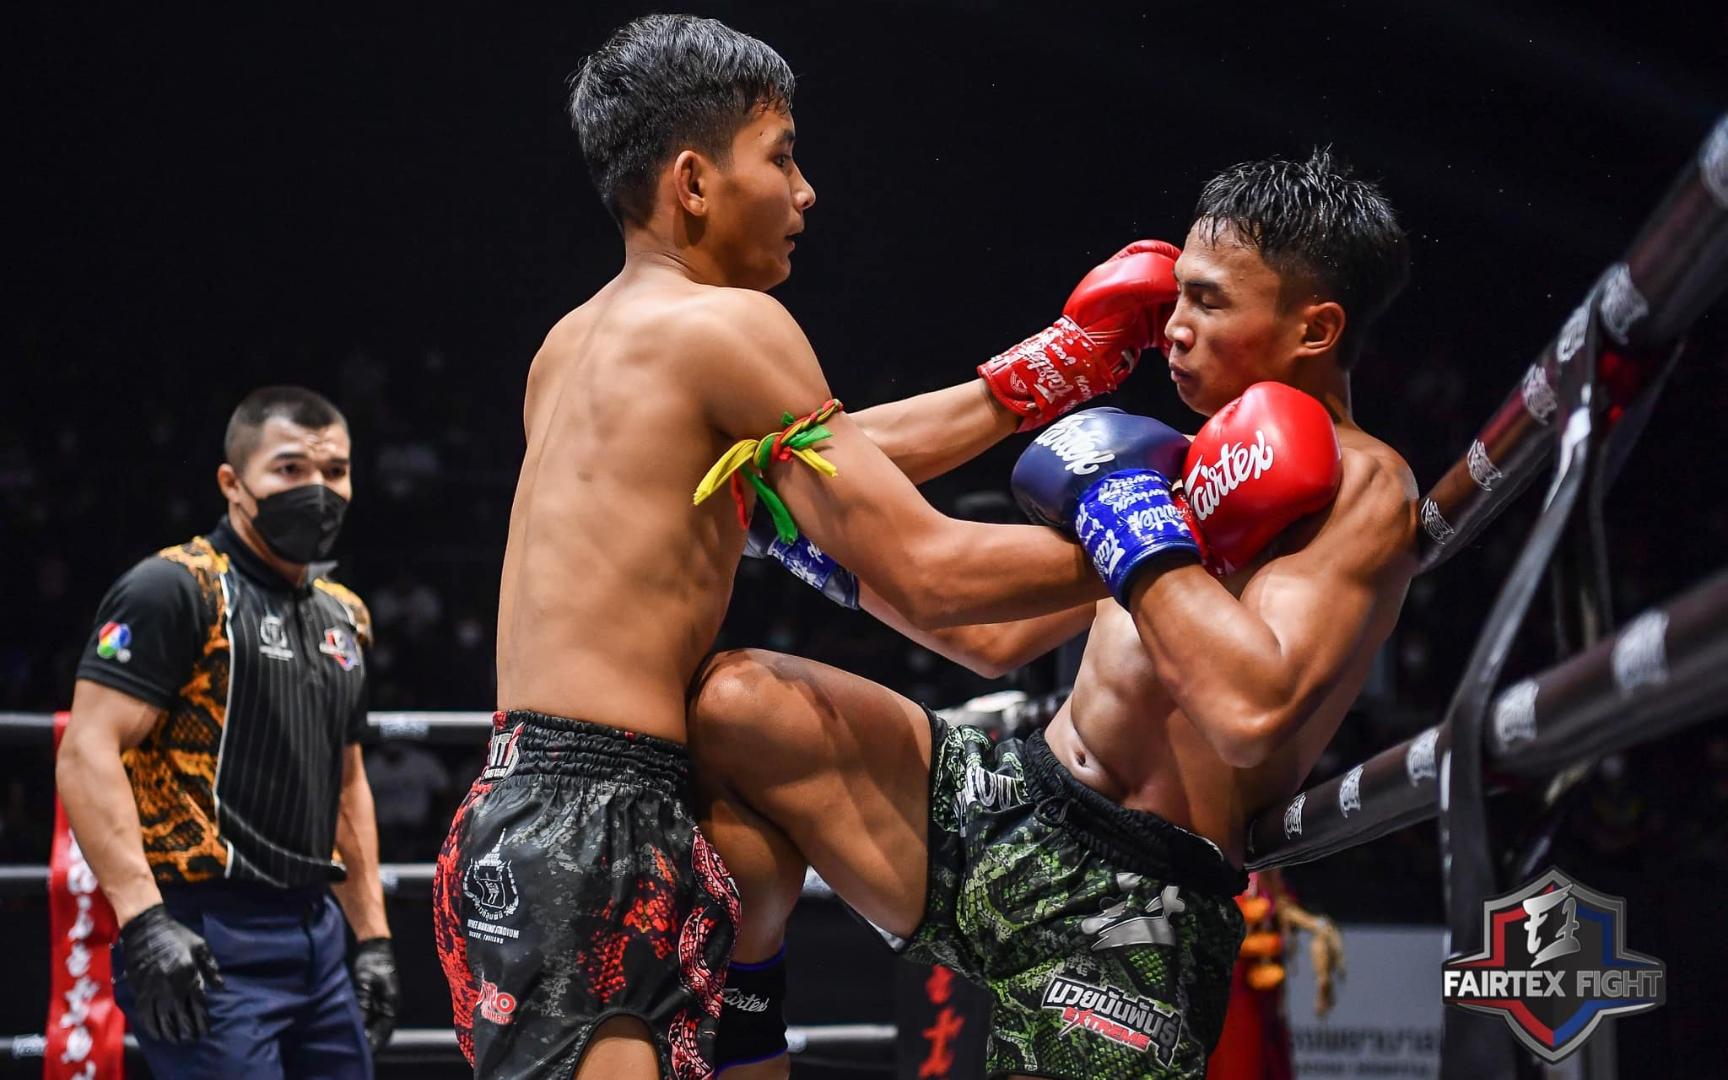 极限泰拳54公斤级泰国选手lukchang vs泰国选手petchpattaya